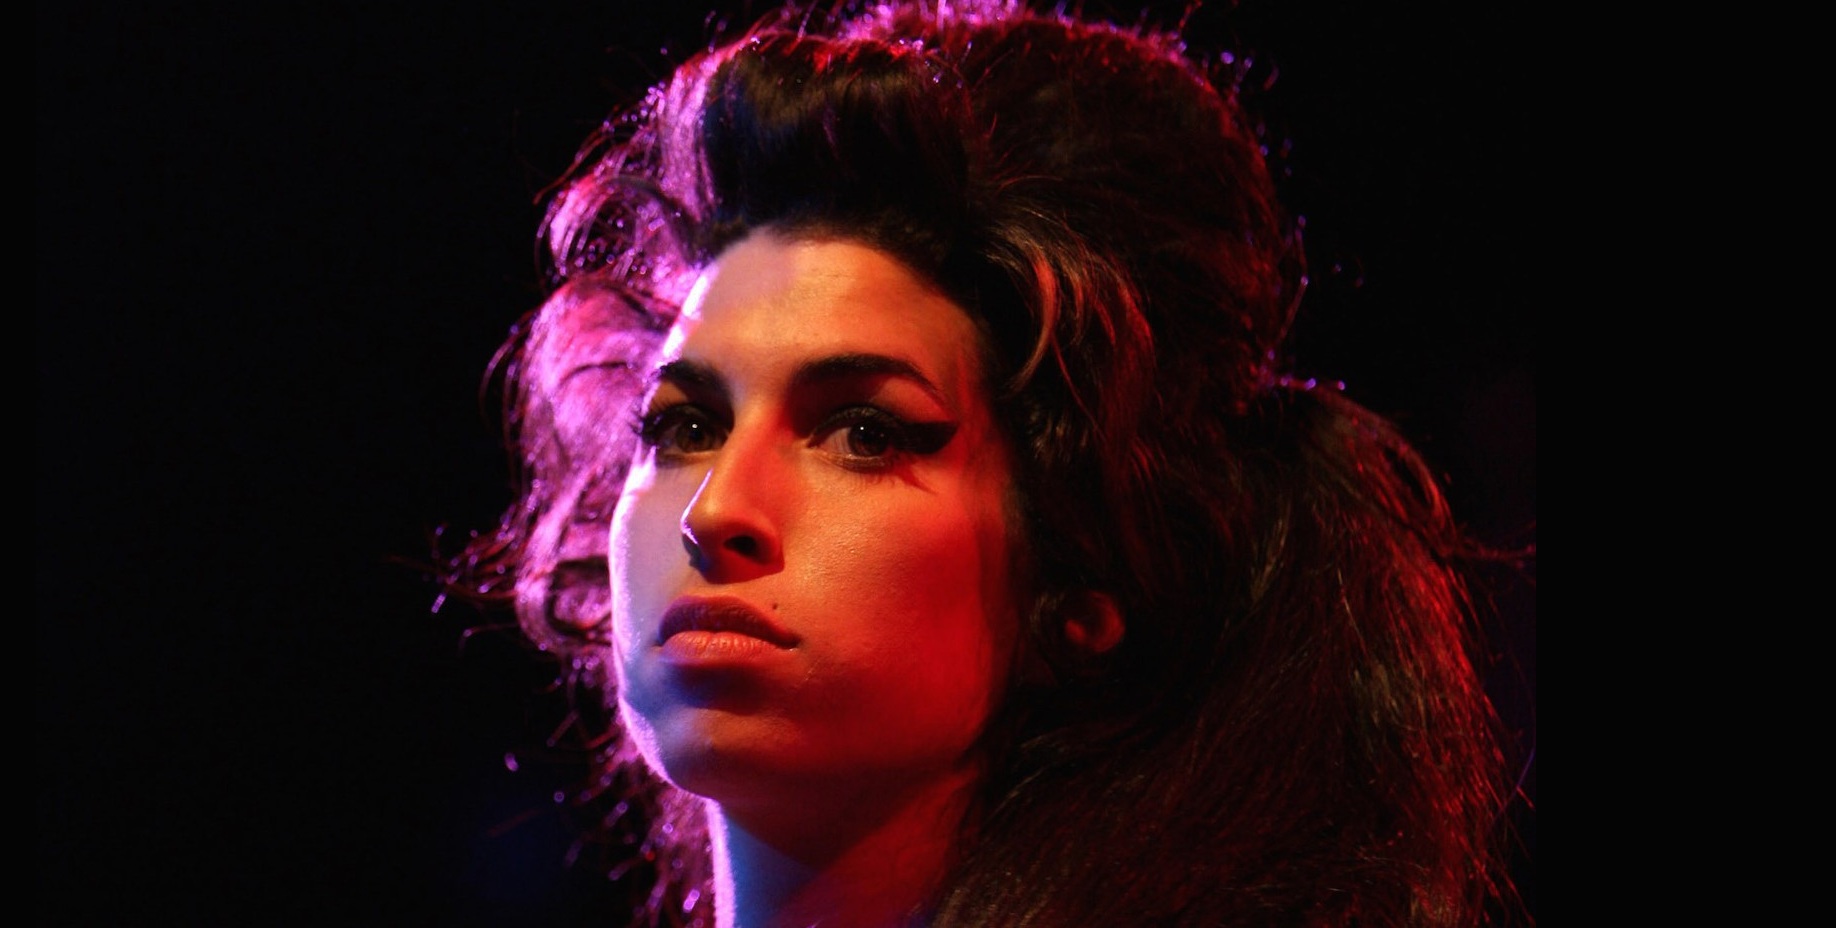 Ver en vivo a Amy Winehouse será posible gracias a la tecnología